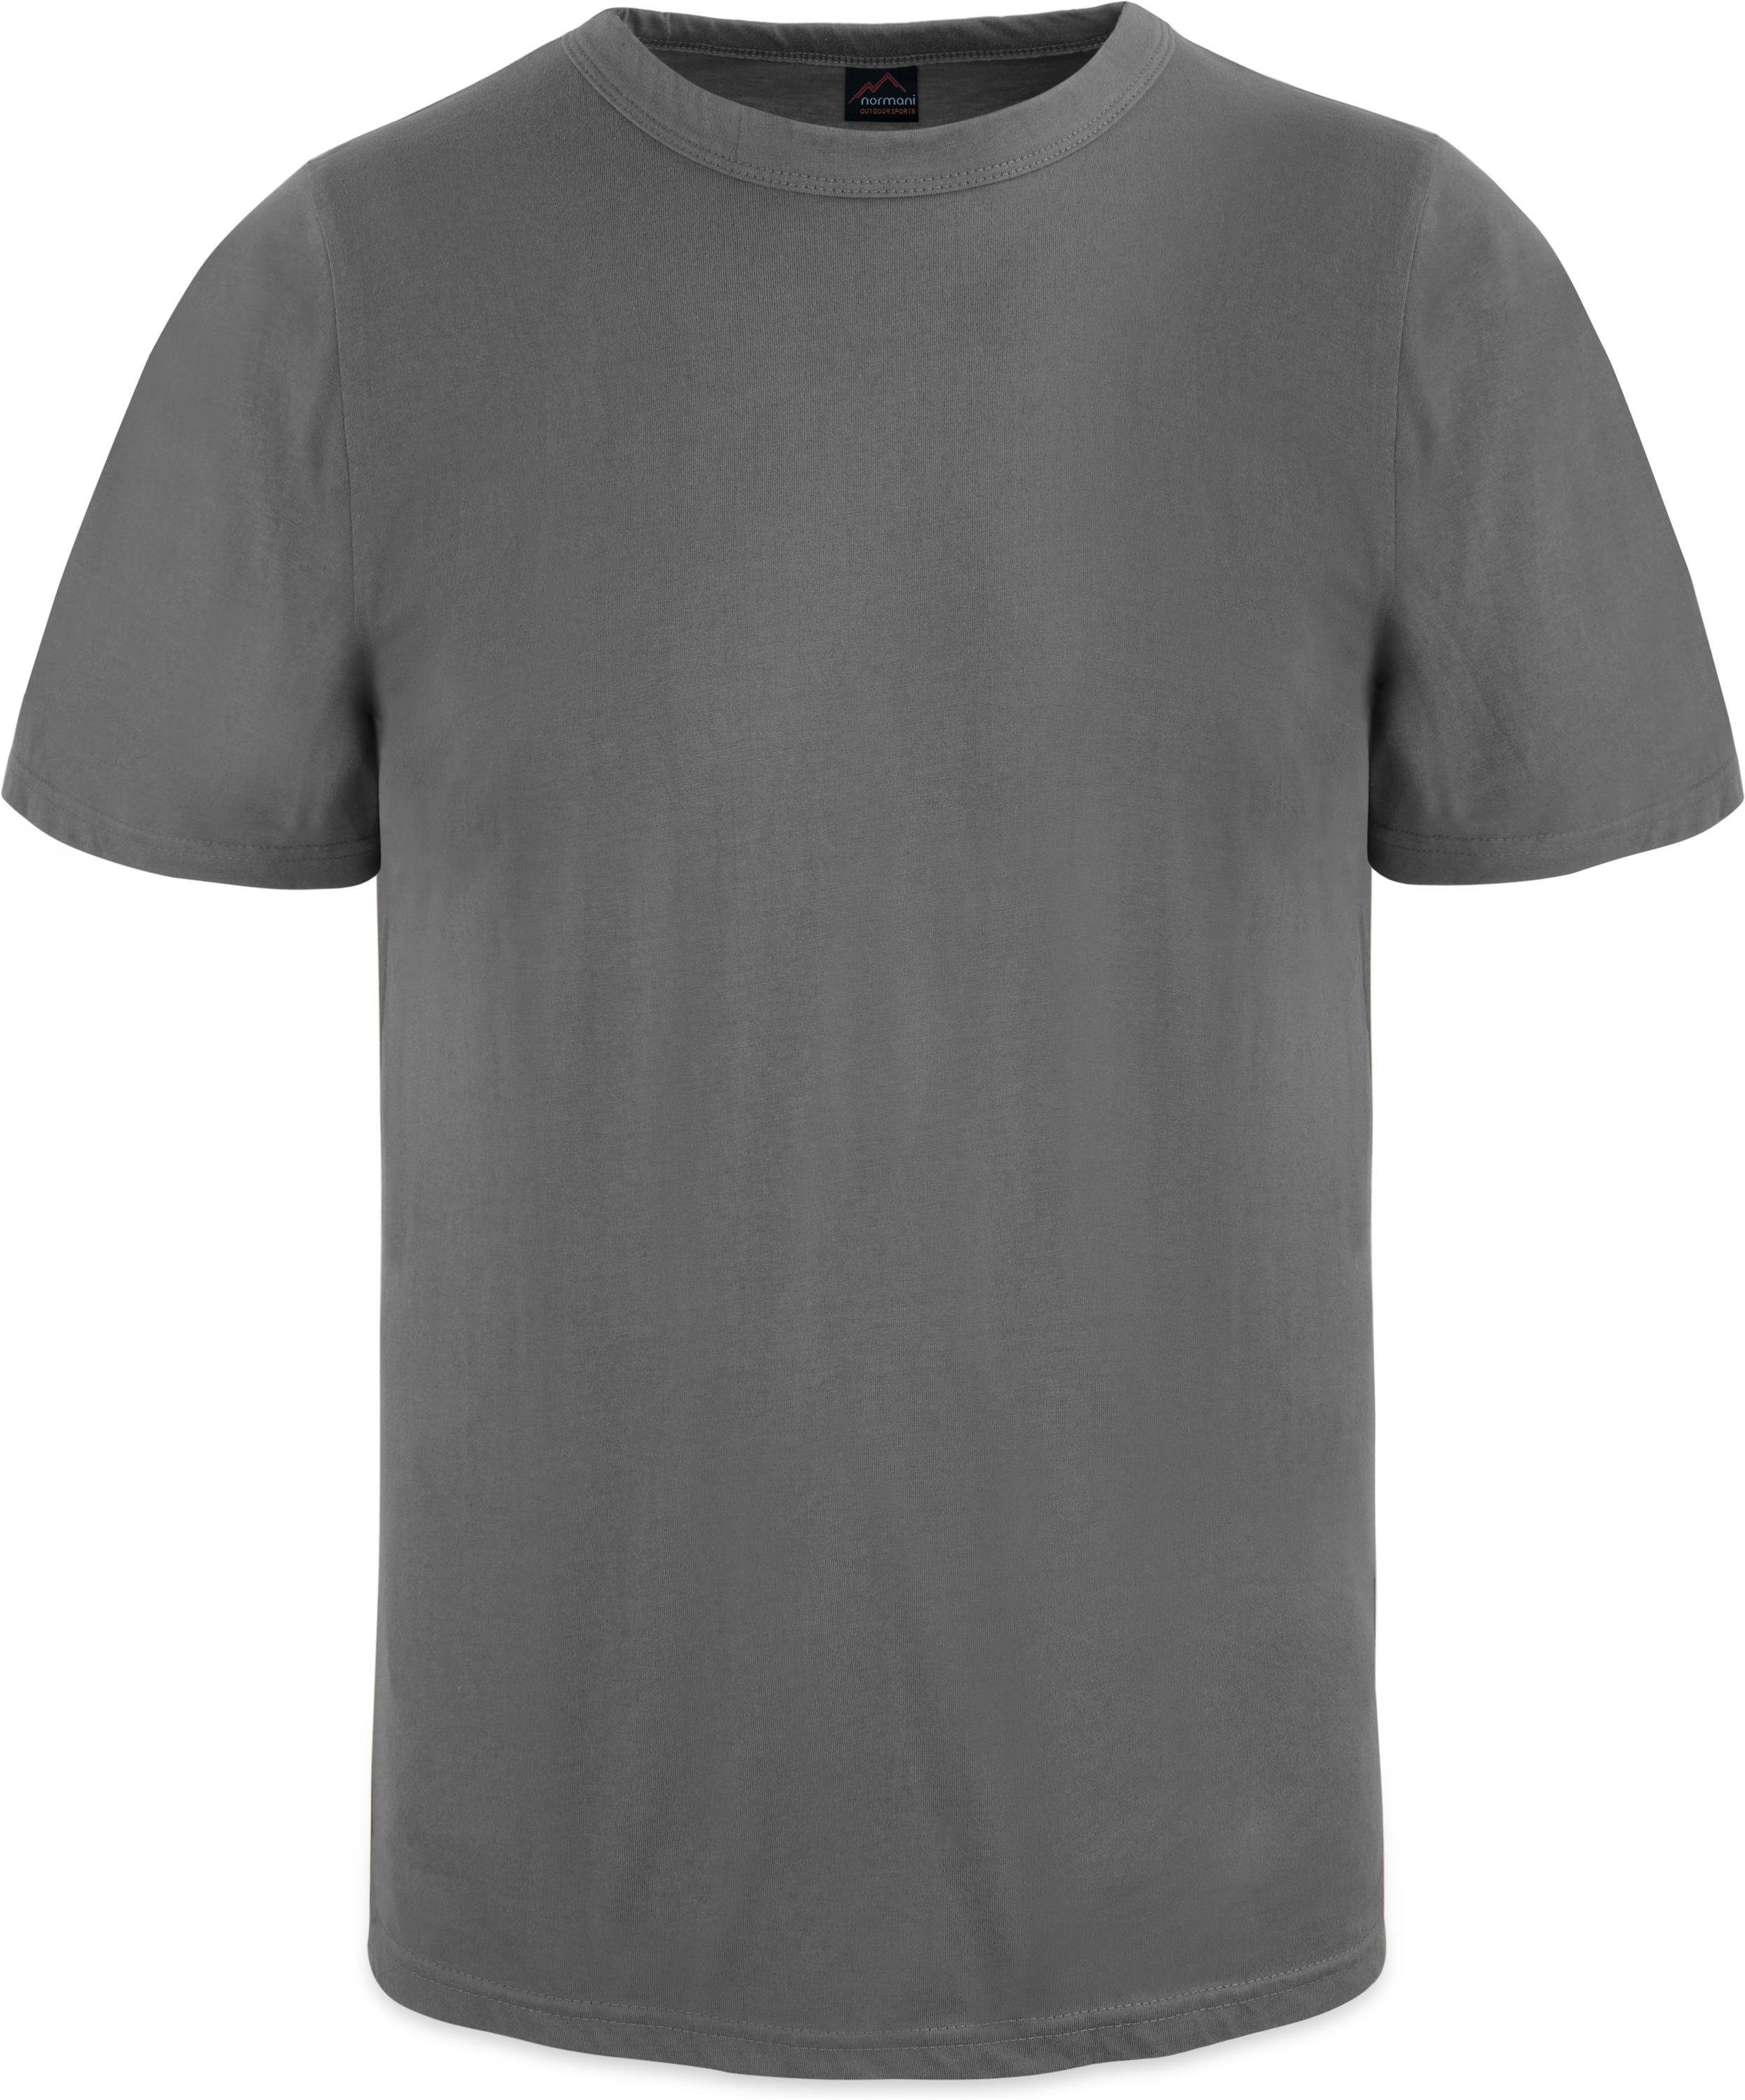 normani Funktionsshirt Herren Bundeswehr Freizeit T-Shirt Bundeswehr Unterhemd T-Shirt nach TL kurzarm Sommer-Shirt Grau